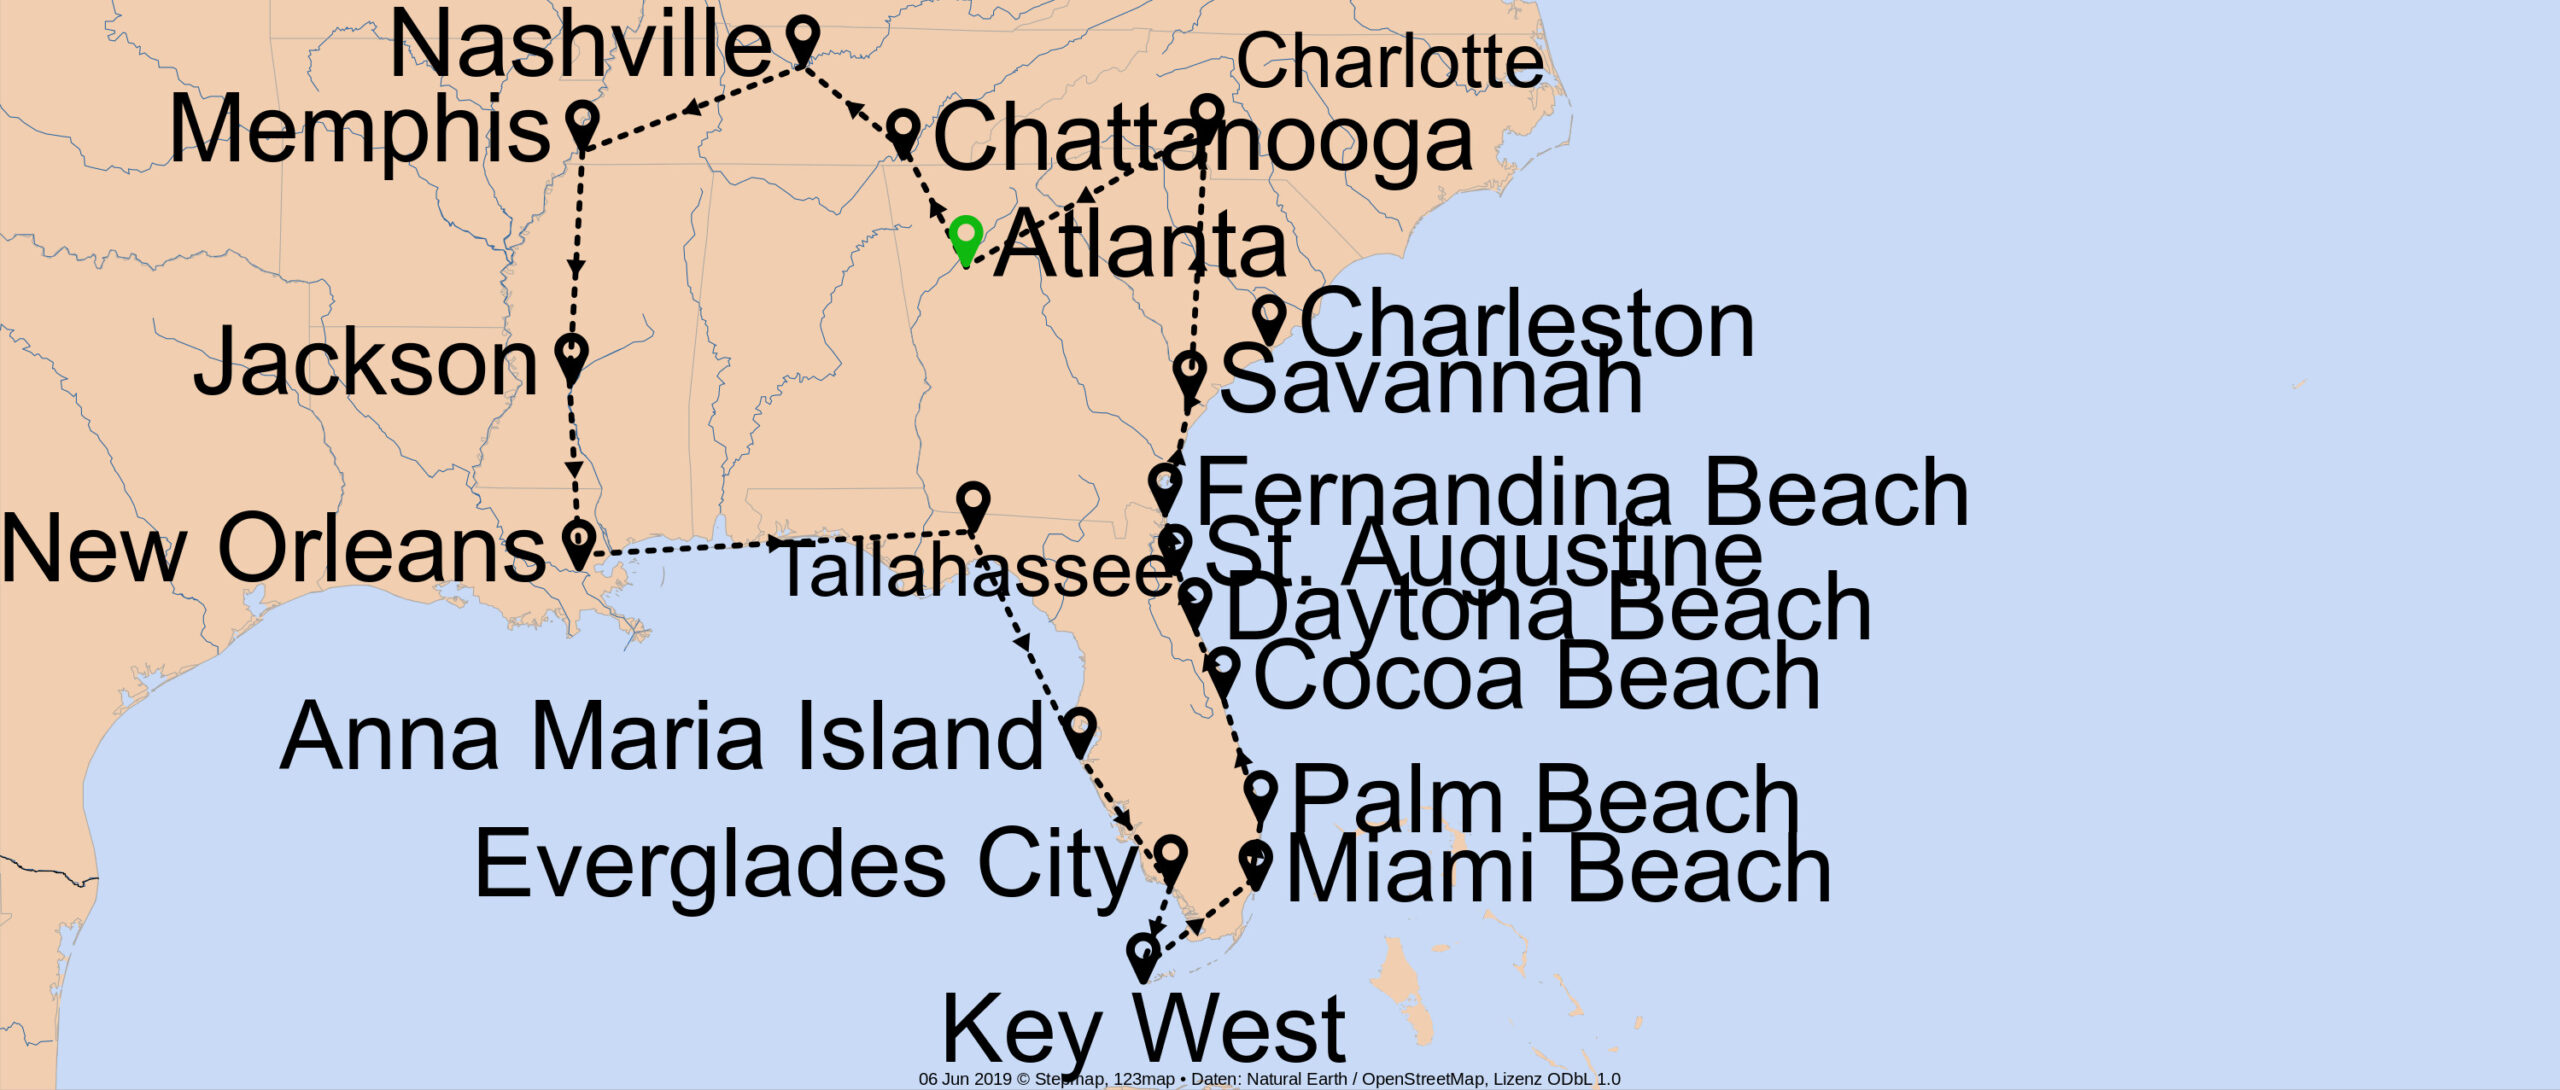 Die große Florida & Südstaaten Erlebnistour - E-1418 - Individuell von Atlanta bis Atlanta Nr. 6